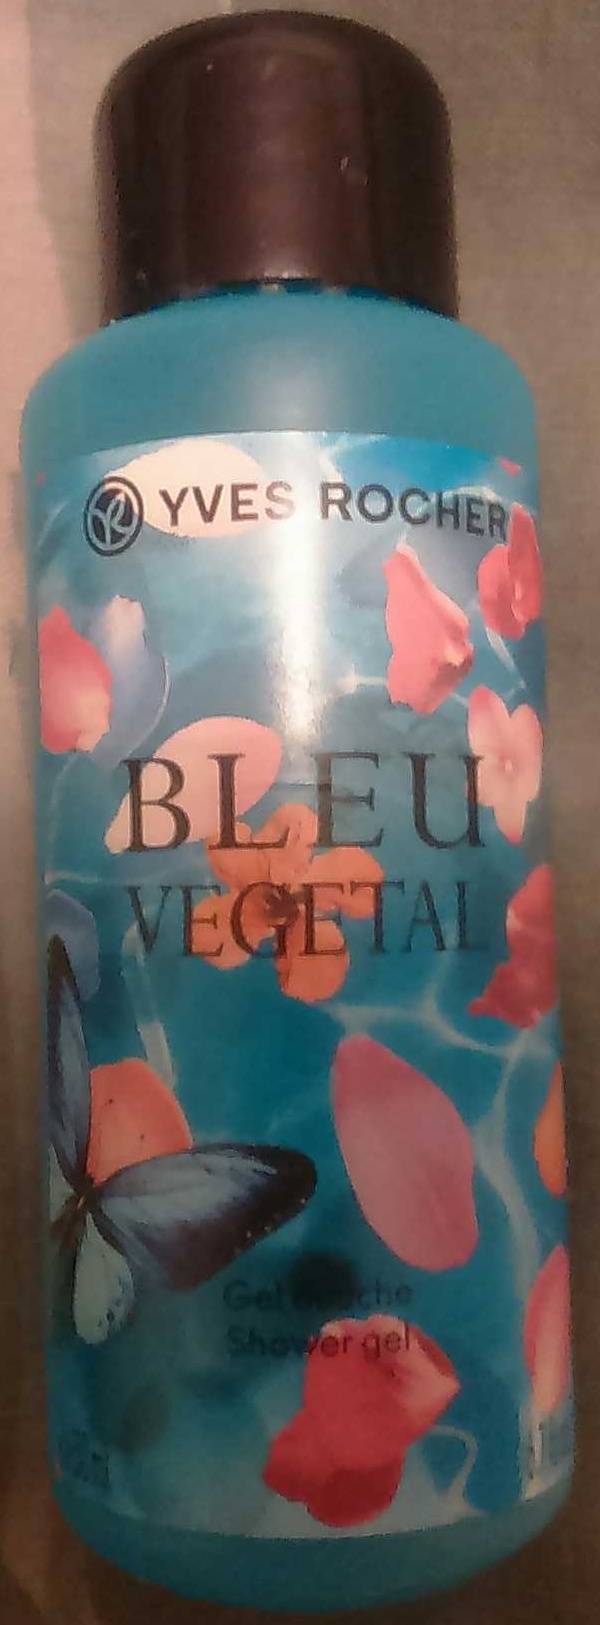 Bleu végétal - Product - fr